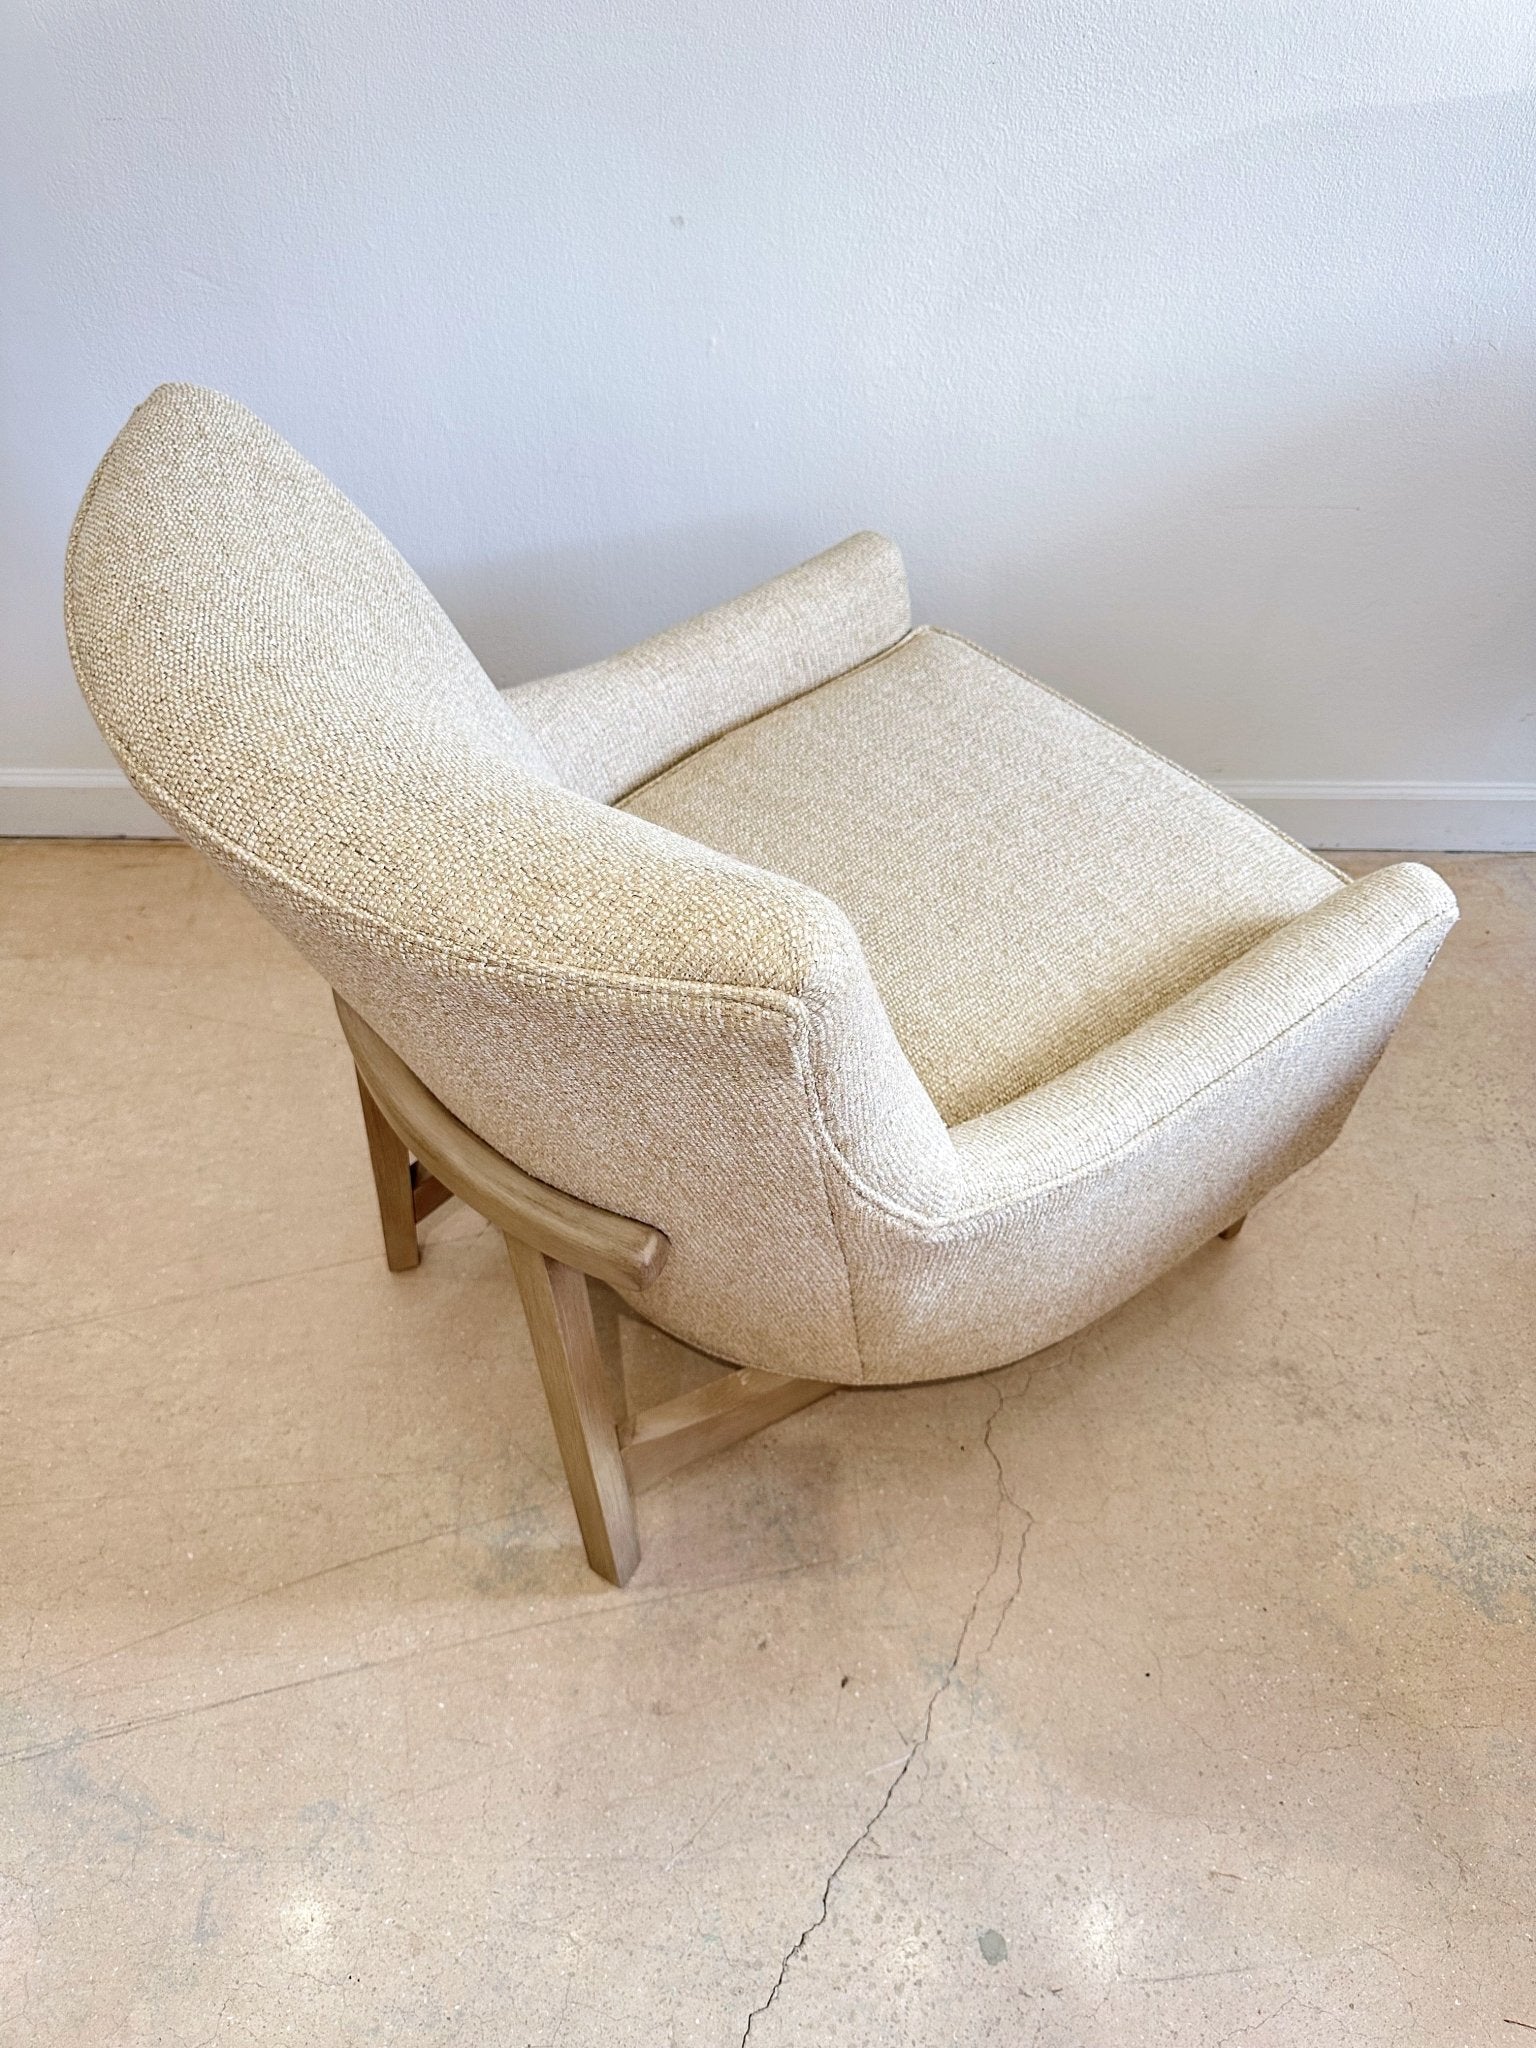 Bingham Accent Chair, by Arhaus - Rehaus